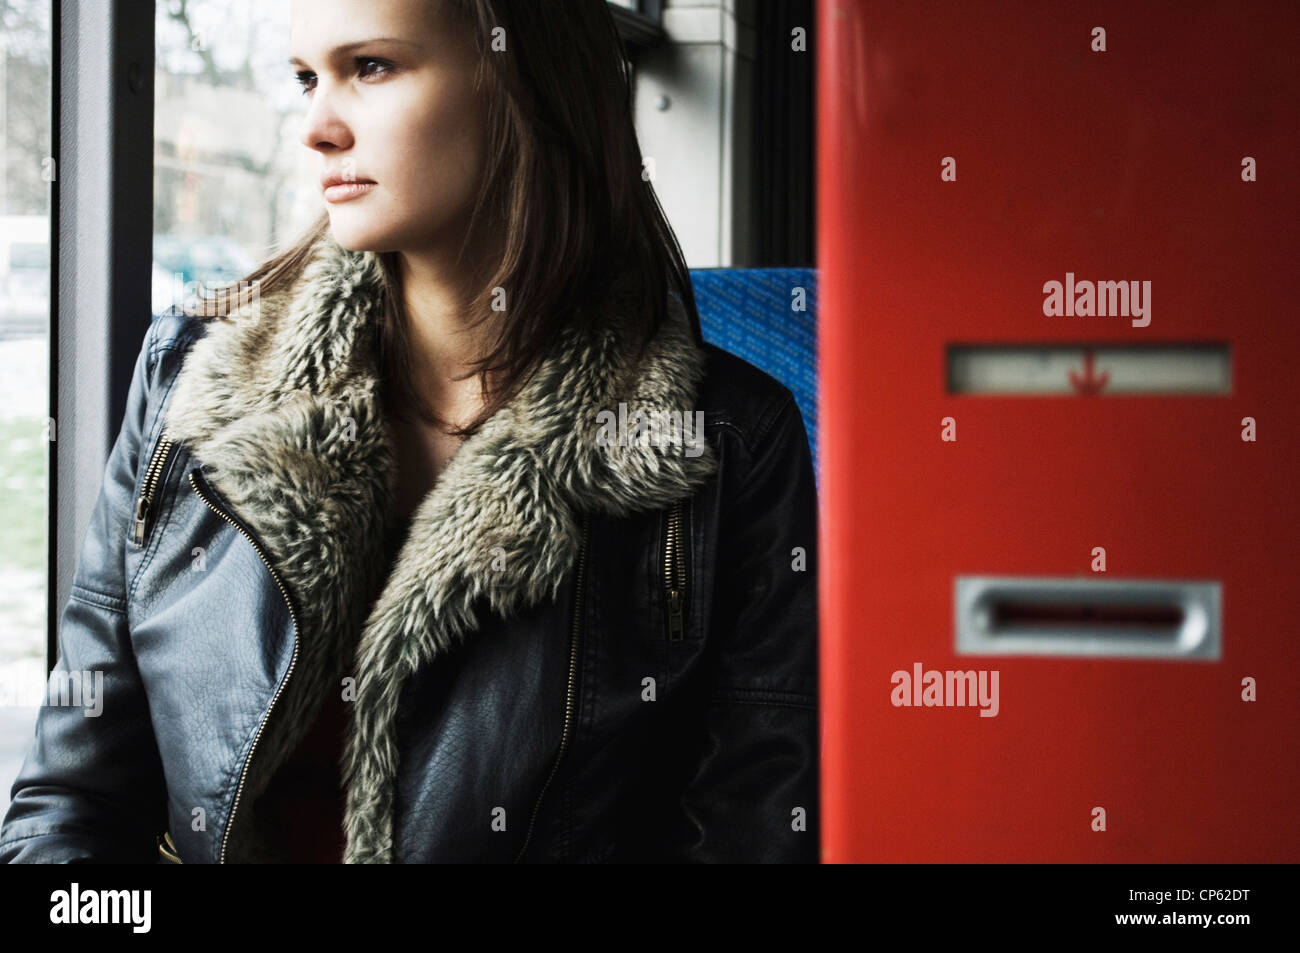 Allemagne, Düsseldorf, jeune femme en bus public Banque D'Images